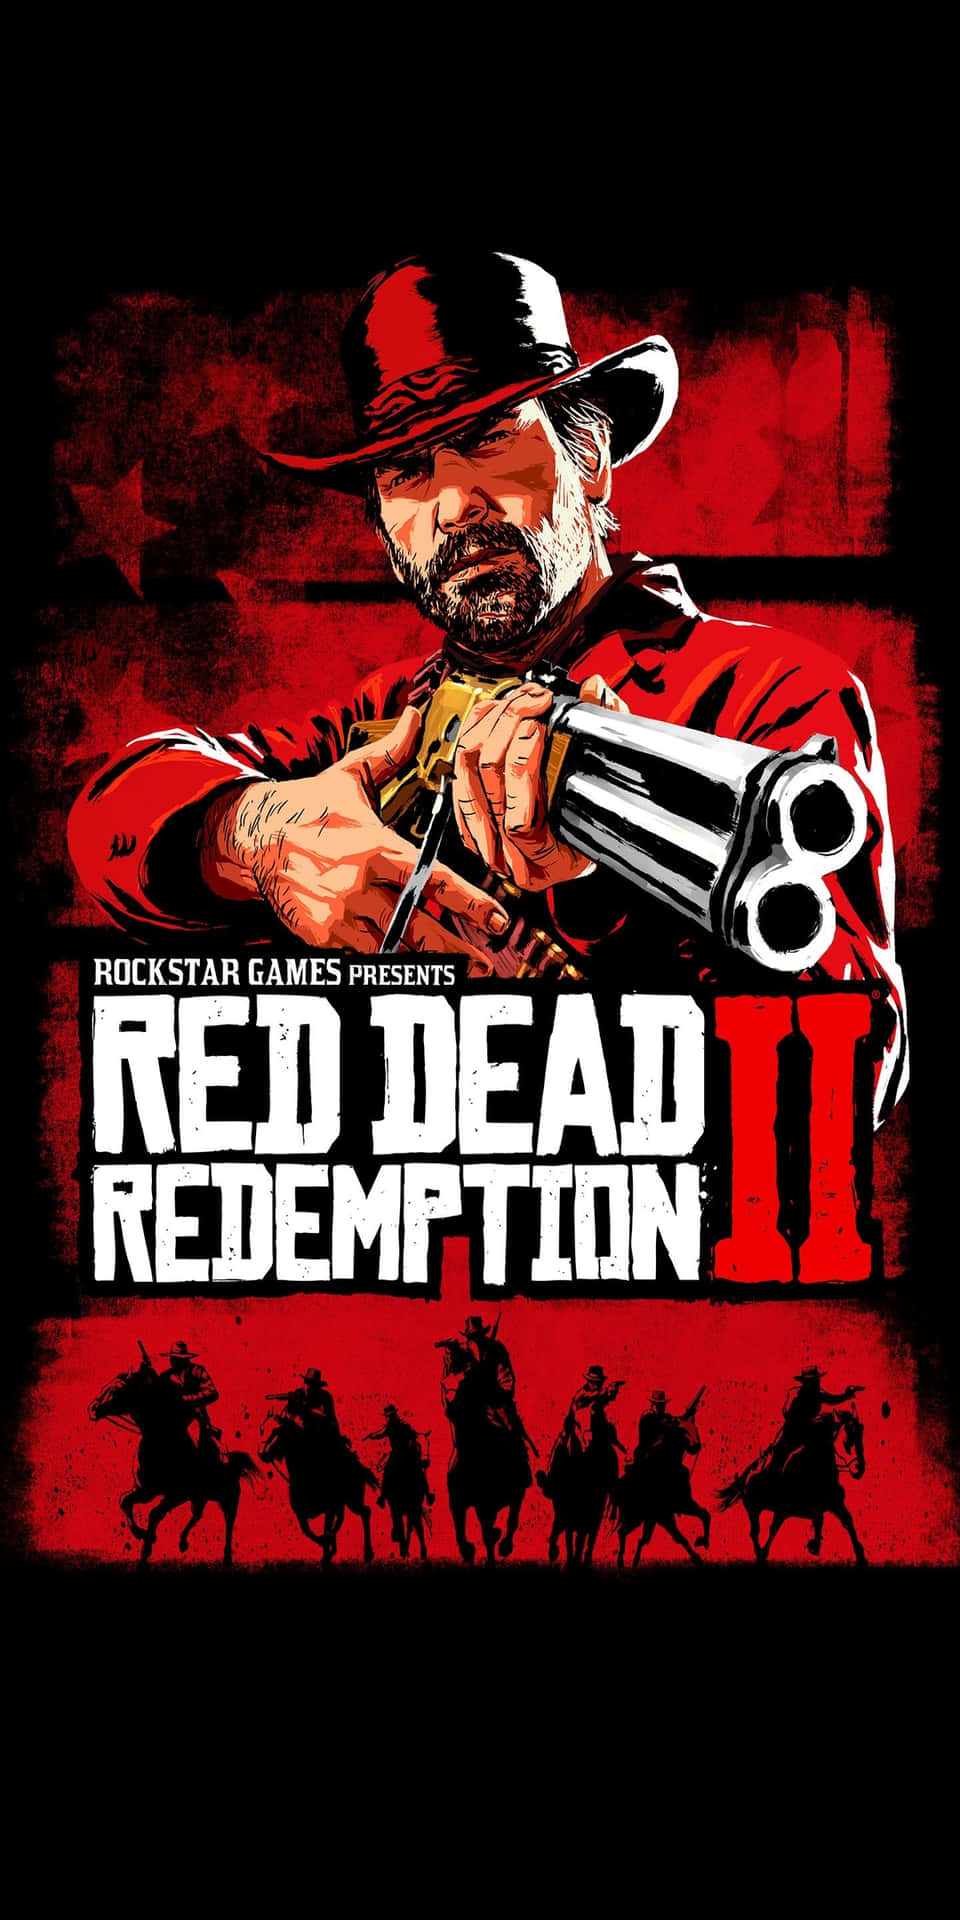 Fondode Pantalla Del Pixel 3 De Red Dead Redemption 2, Póster Rockstar Games, Arthur Morgan Con Escopeta